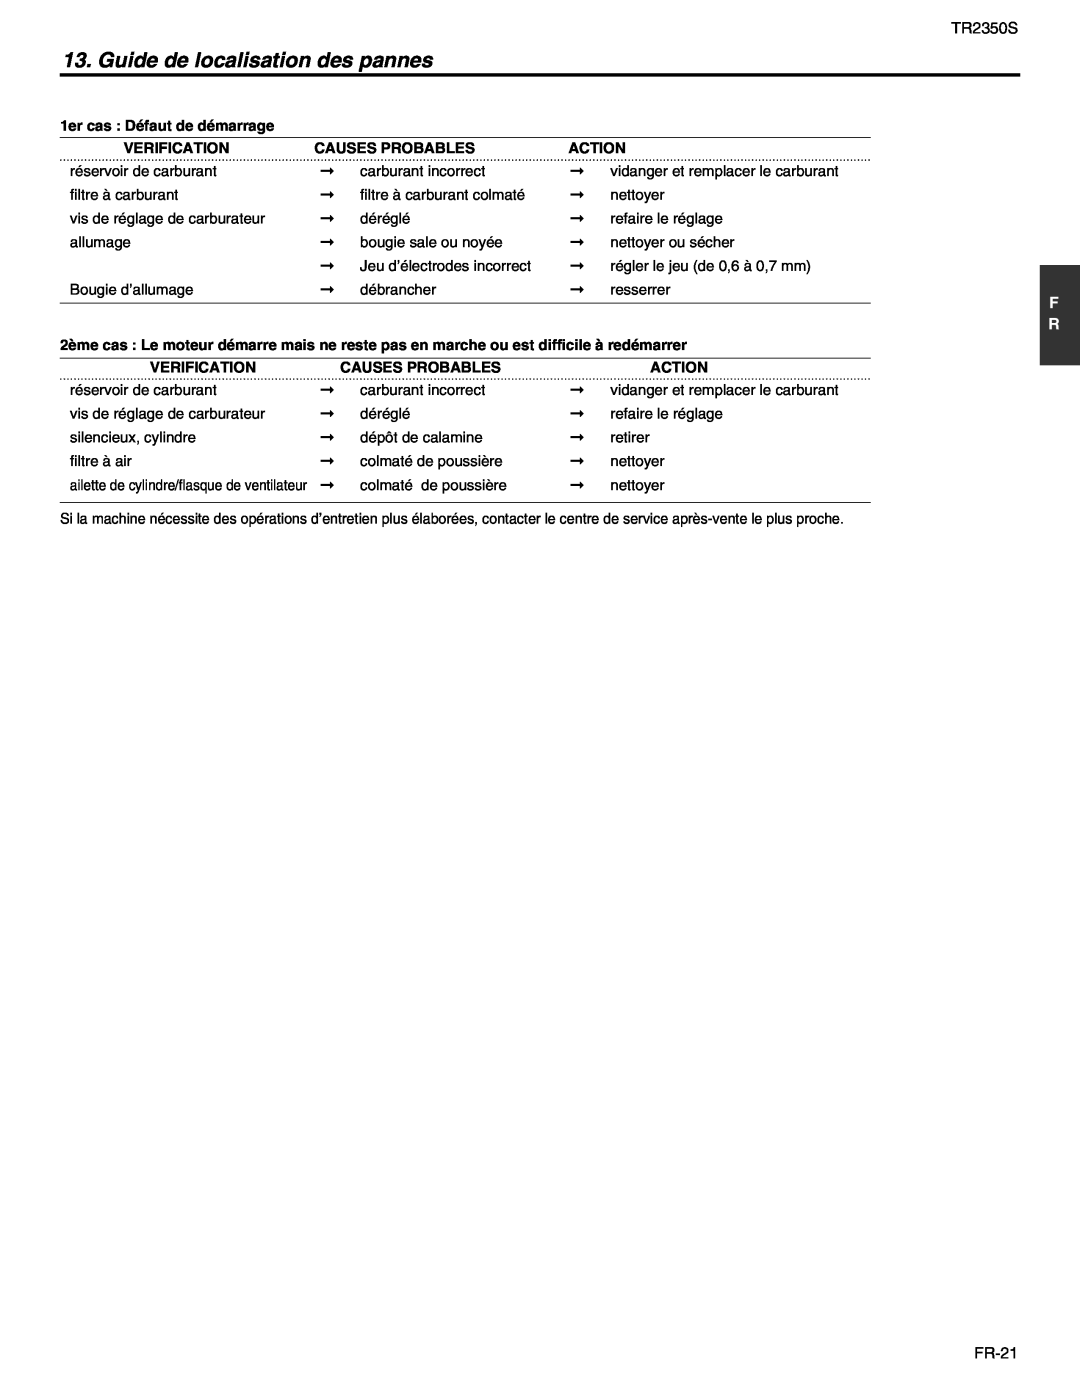 RedMax TR2350S manual Guide de localisation des pannes, 1er cas Défaut de démarrage, Verification, Causes Probables, Action 